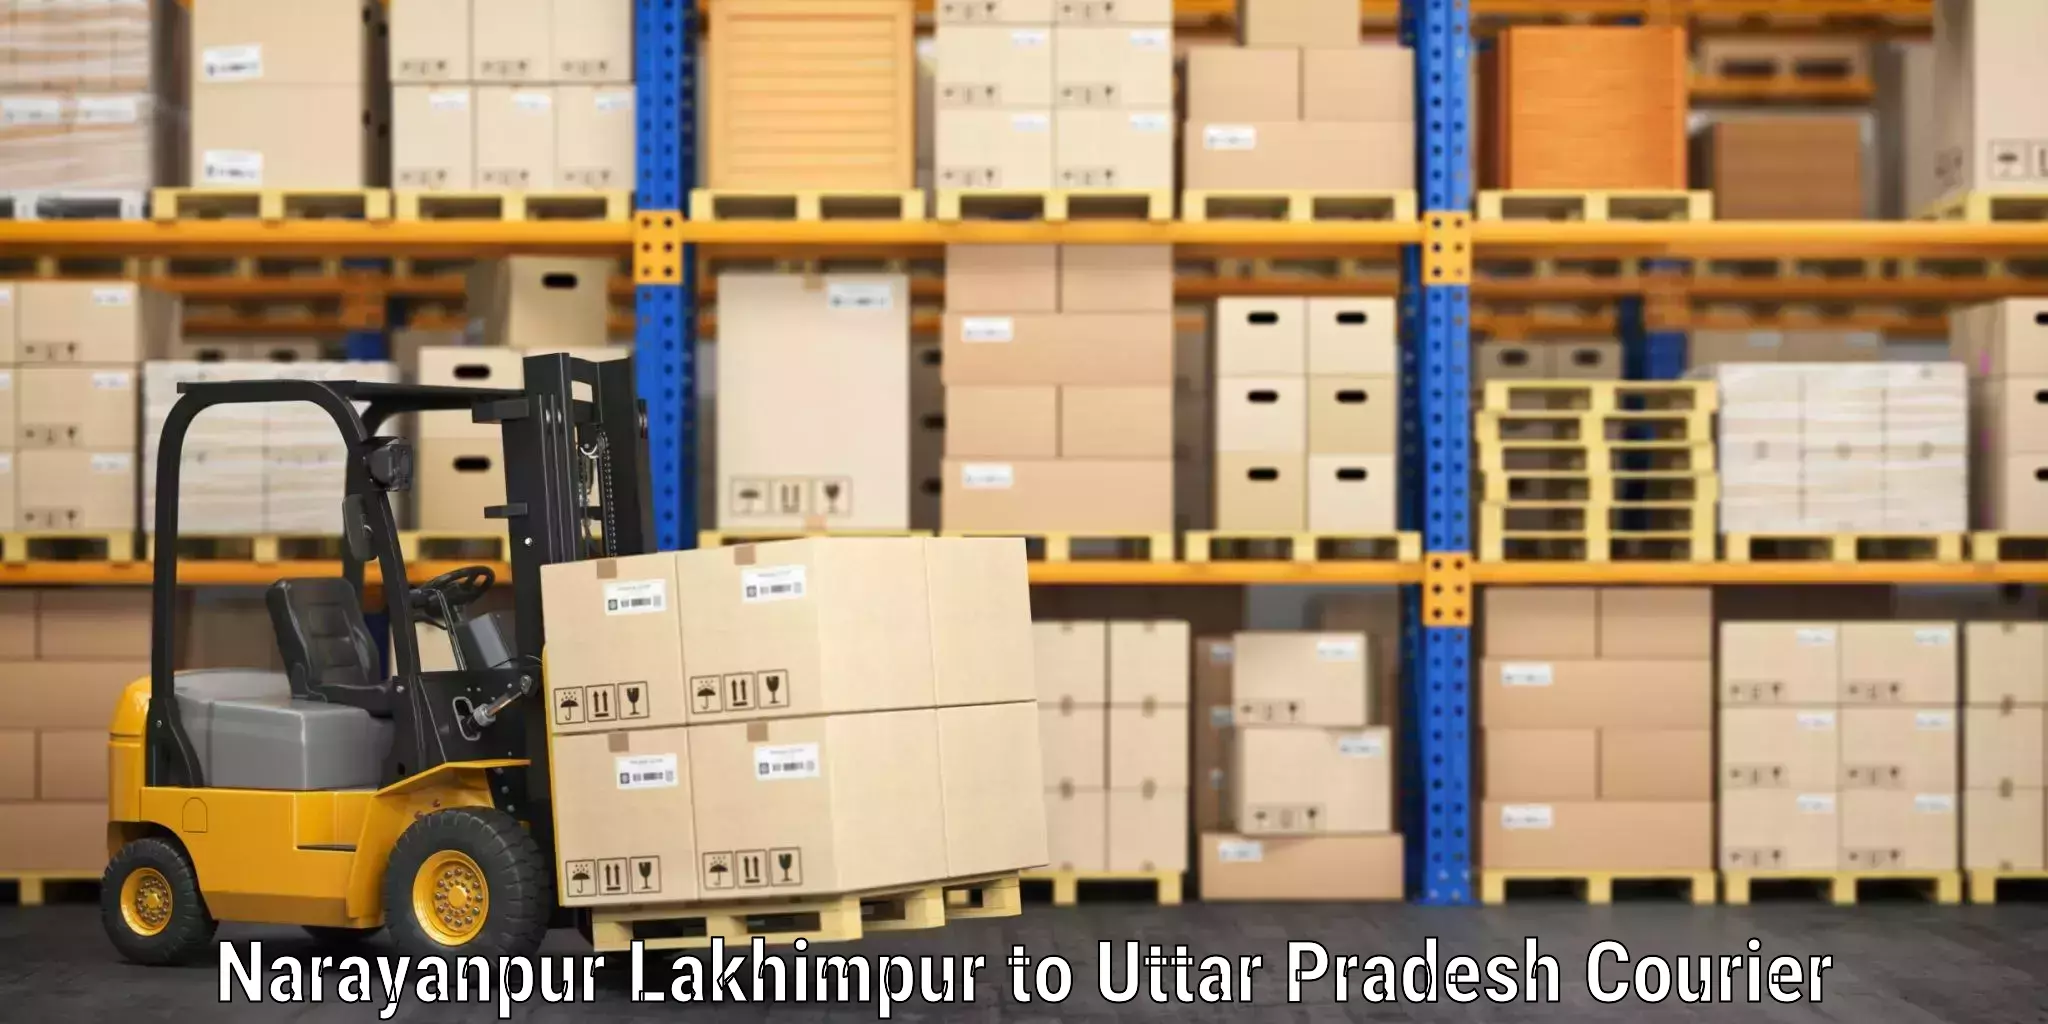 Luggage shipment strategy Narayanpur Lakhimpur to Bansdih